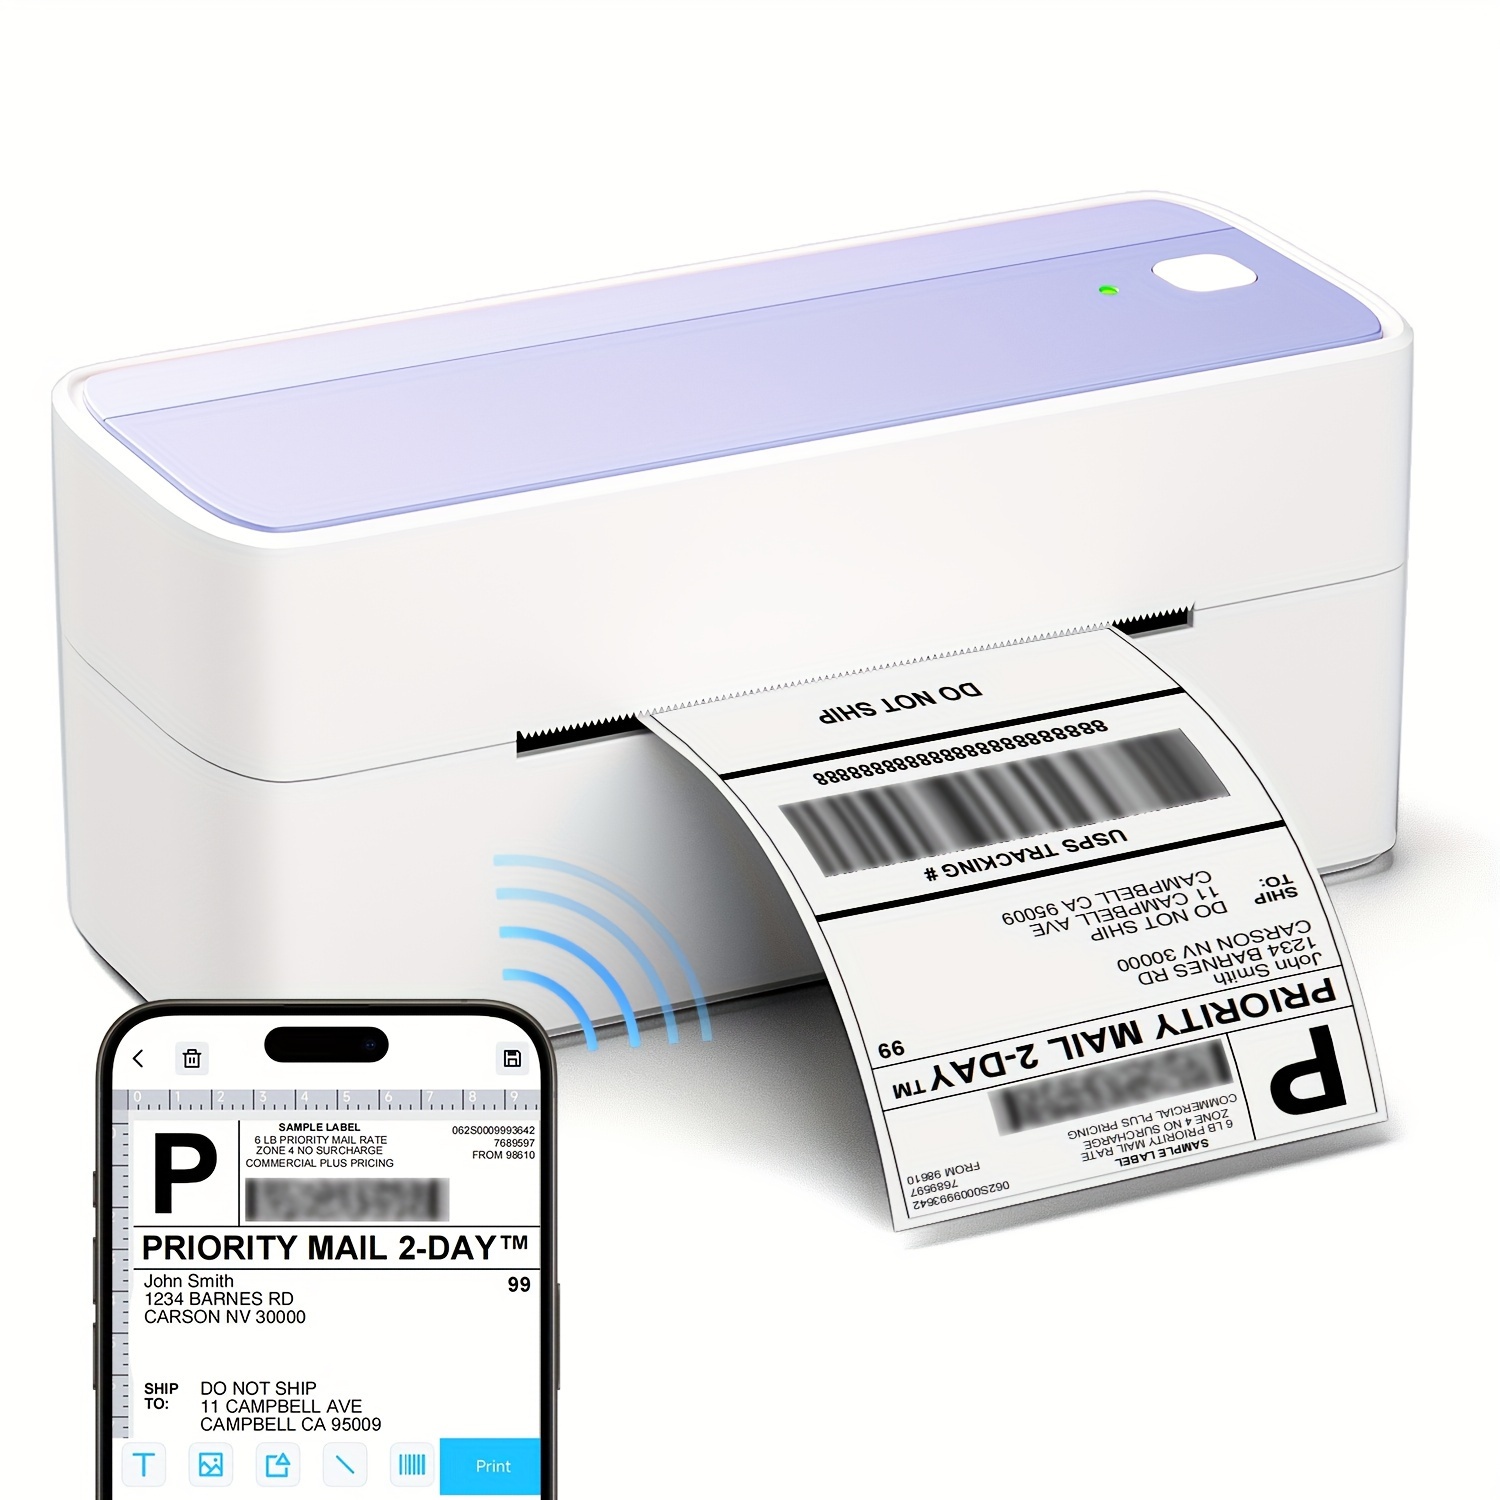 Phomemo – imprimante d'étiquettes M200, 3 pouces, 80mm, thermique,  Bluetooth, imprimante d'étiquettes de codes à barres pour petites  entreprises, vêtements